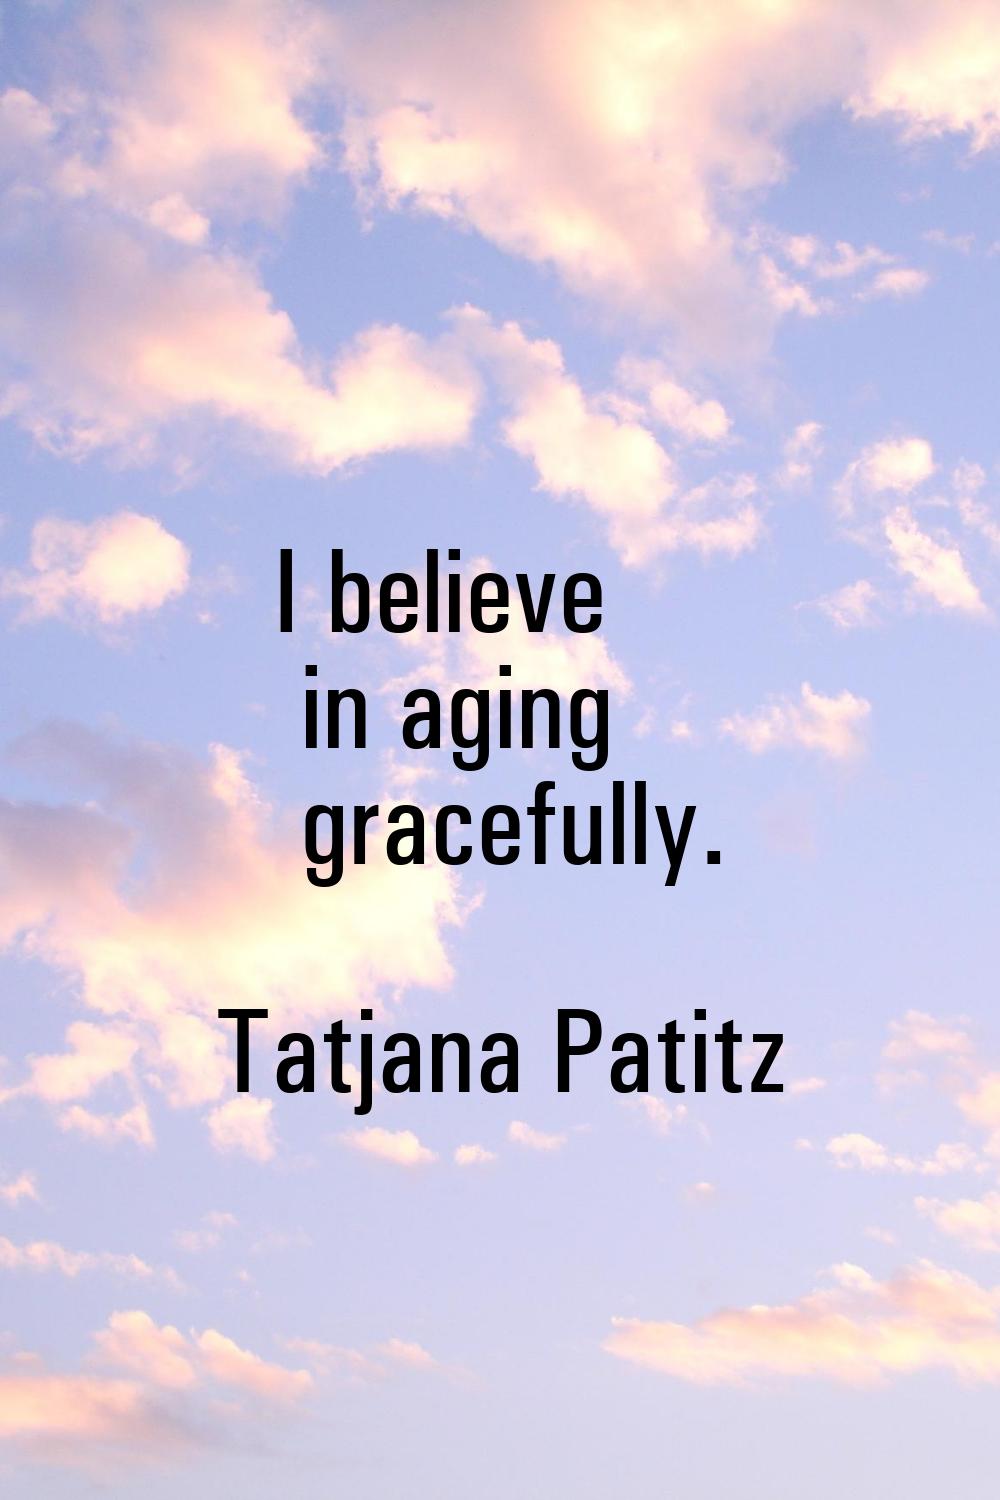 I believe in aging gracefully.